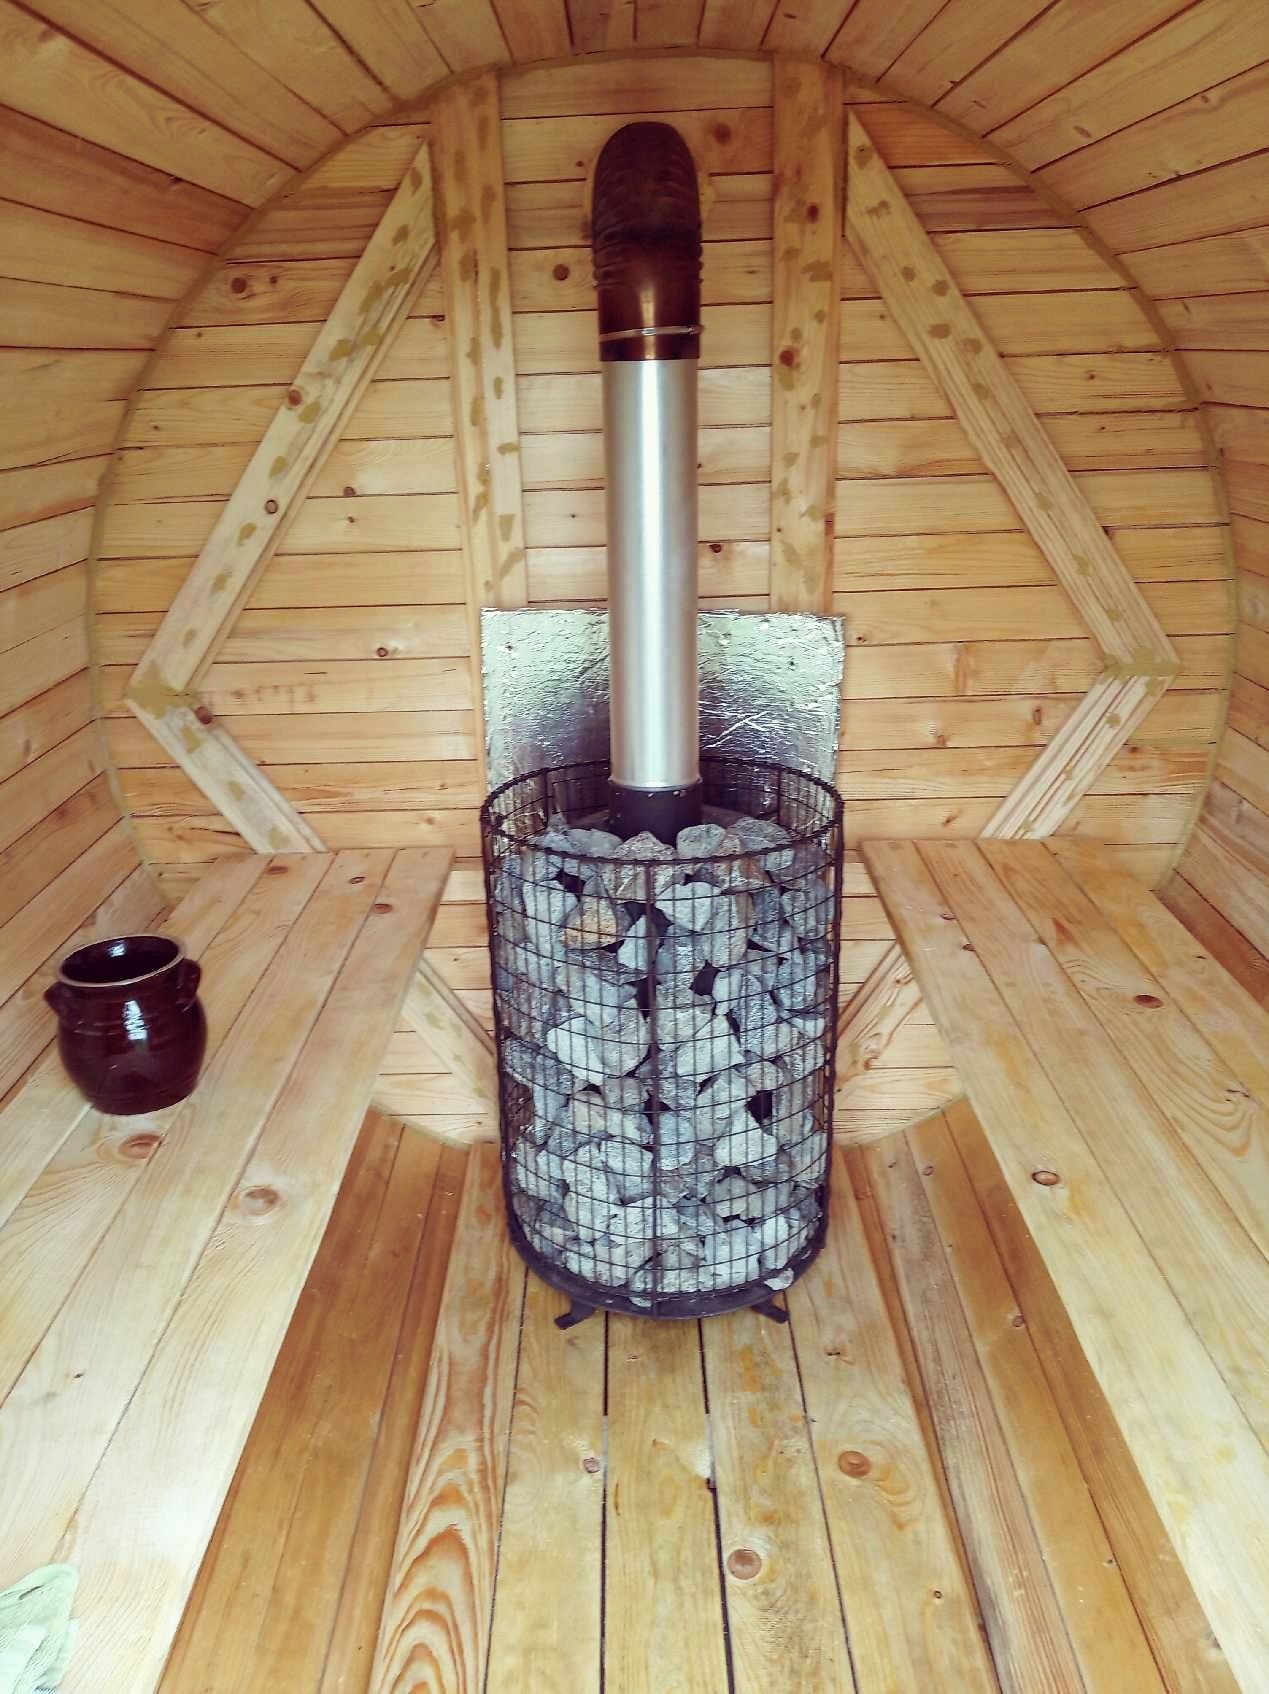 Piec do sauny opalany drewnem Ekonomiczna sauna Nagranie w opisie